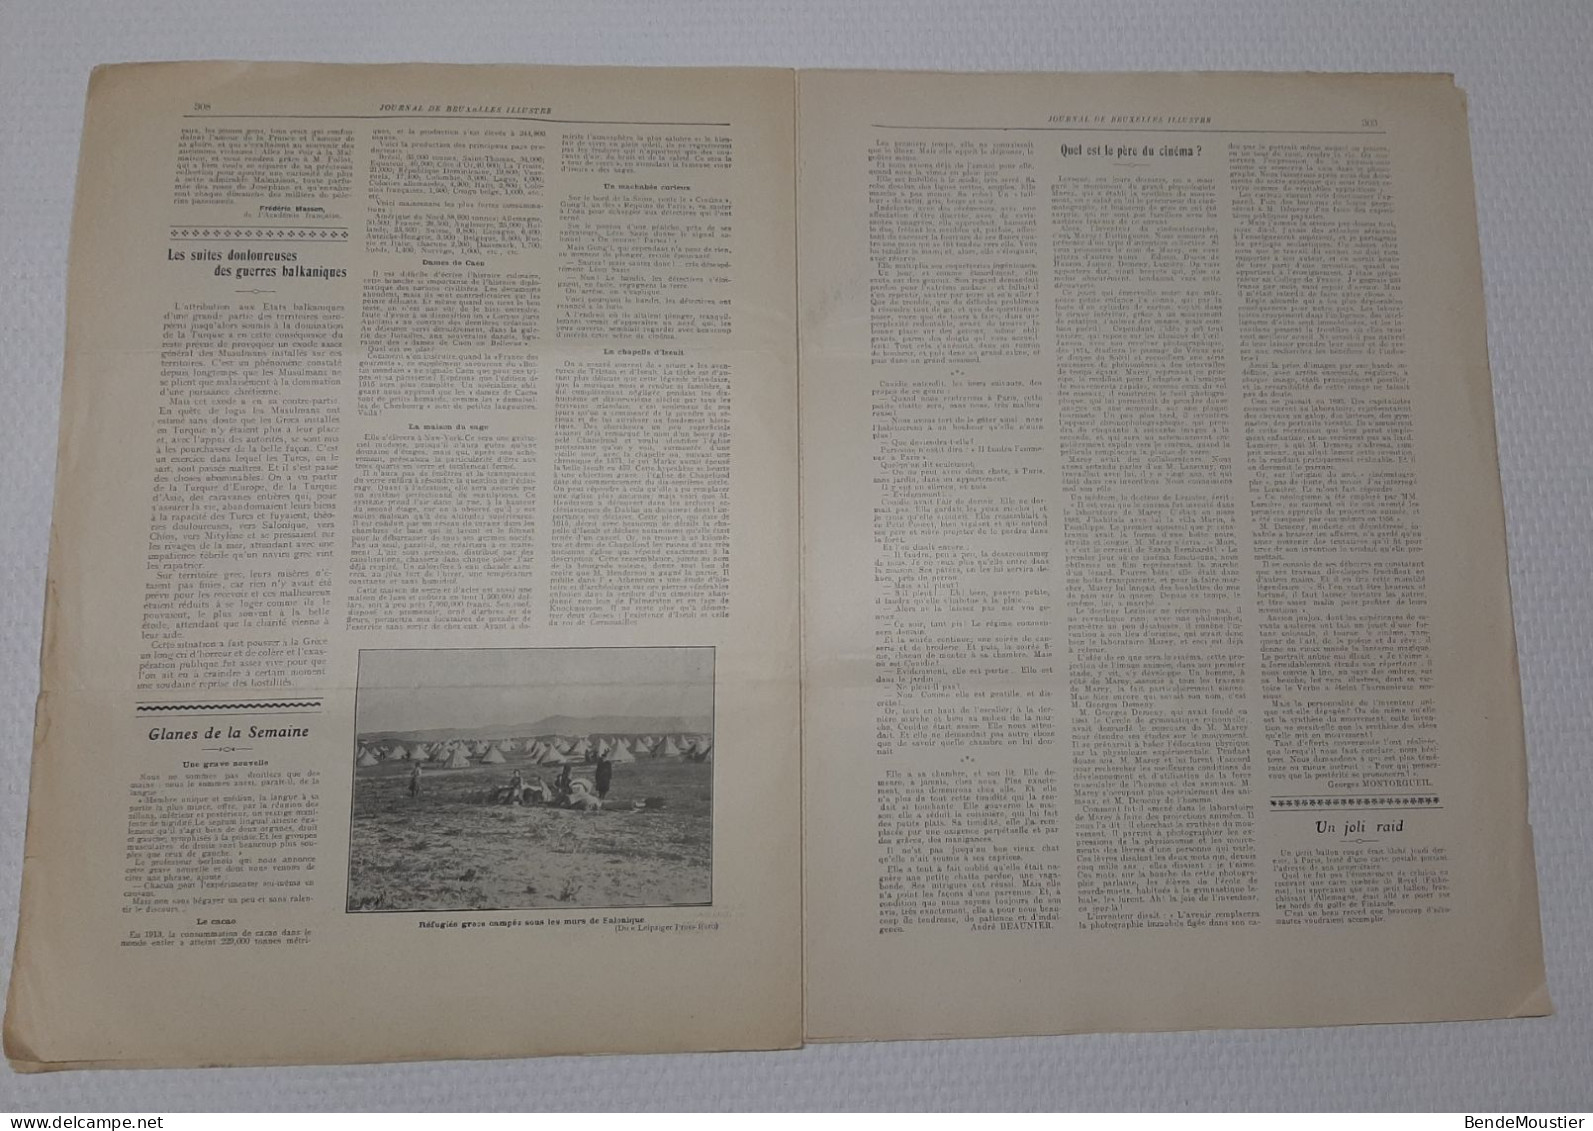 Journal De Bruxelles Illustré - Evêque S.G.Mgr Stillemans - Cyclisme  Manpaye - Otto -Michiels - Vanbever - 1914. - General Issues